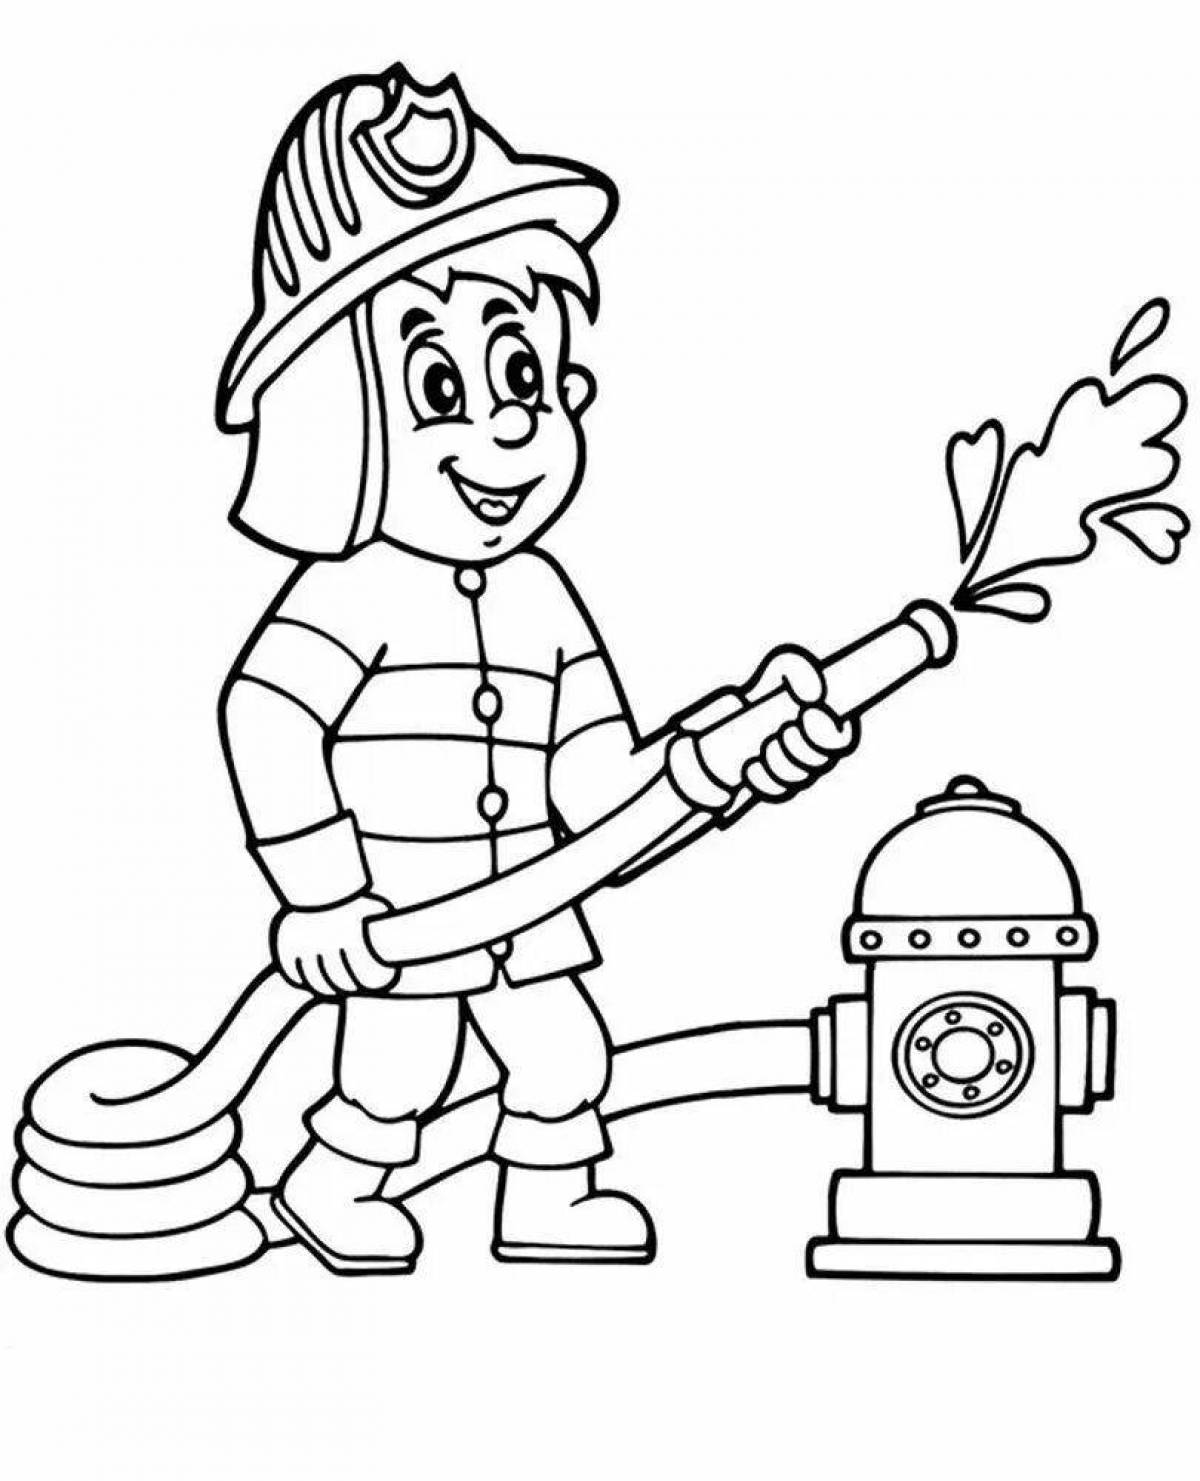 Креативная раскраска пожарного для детей